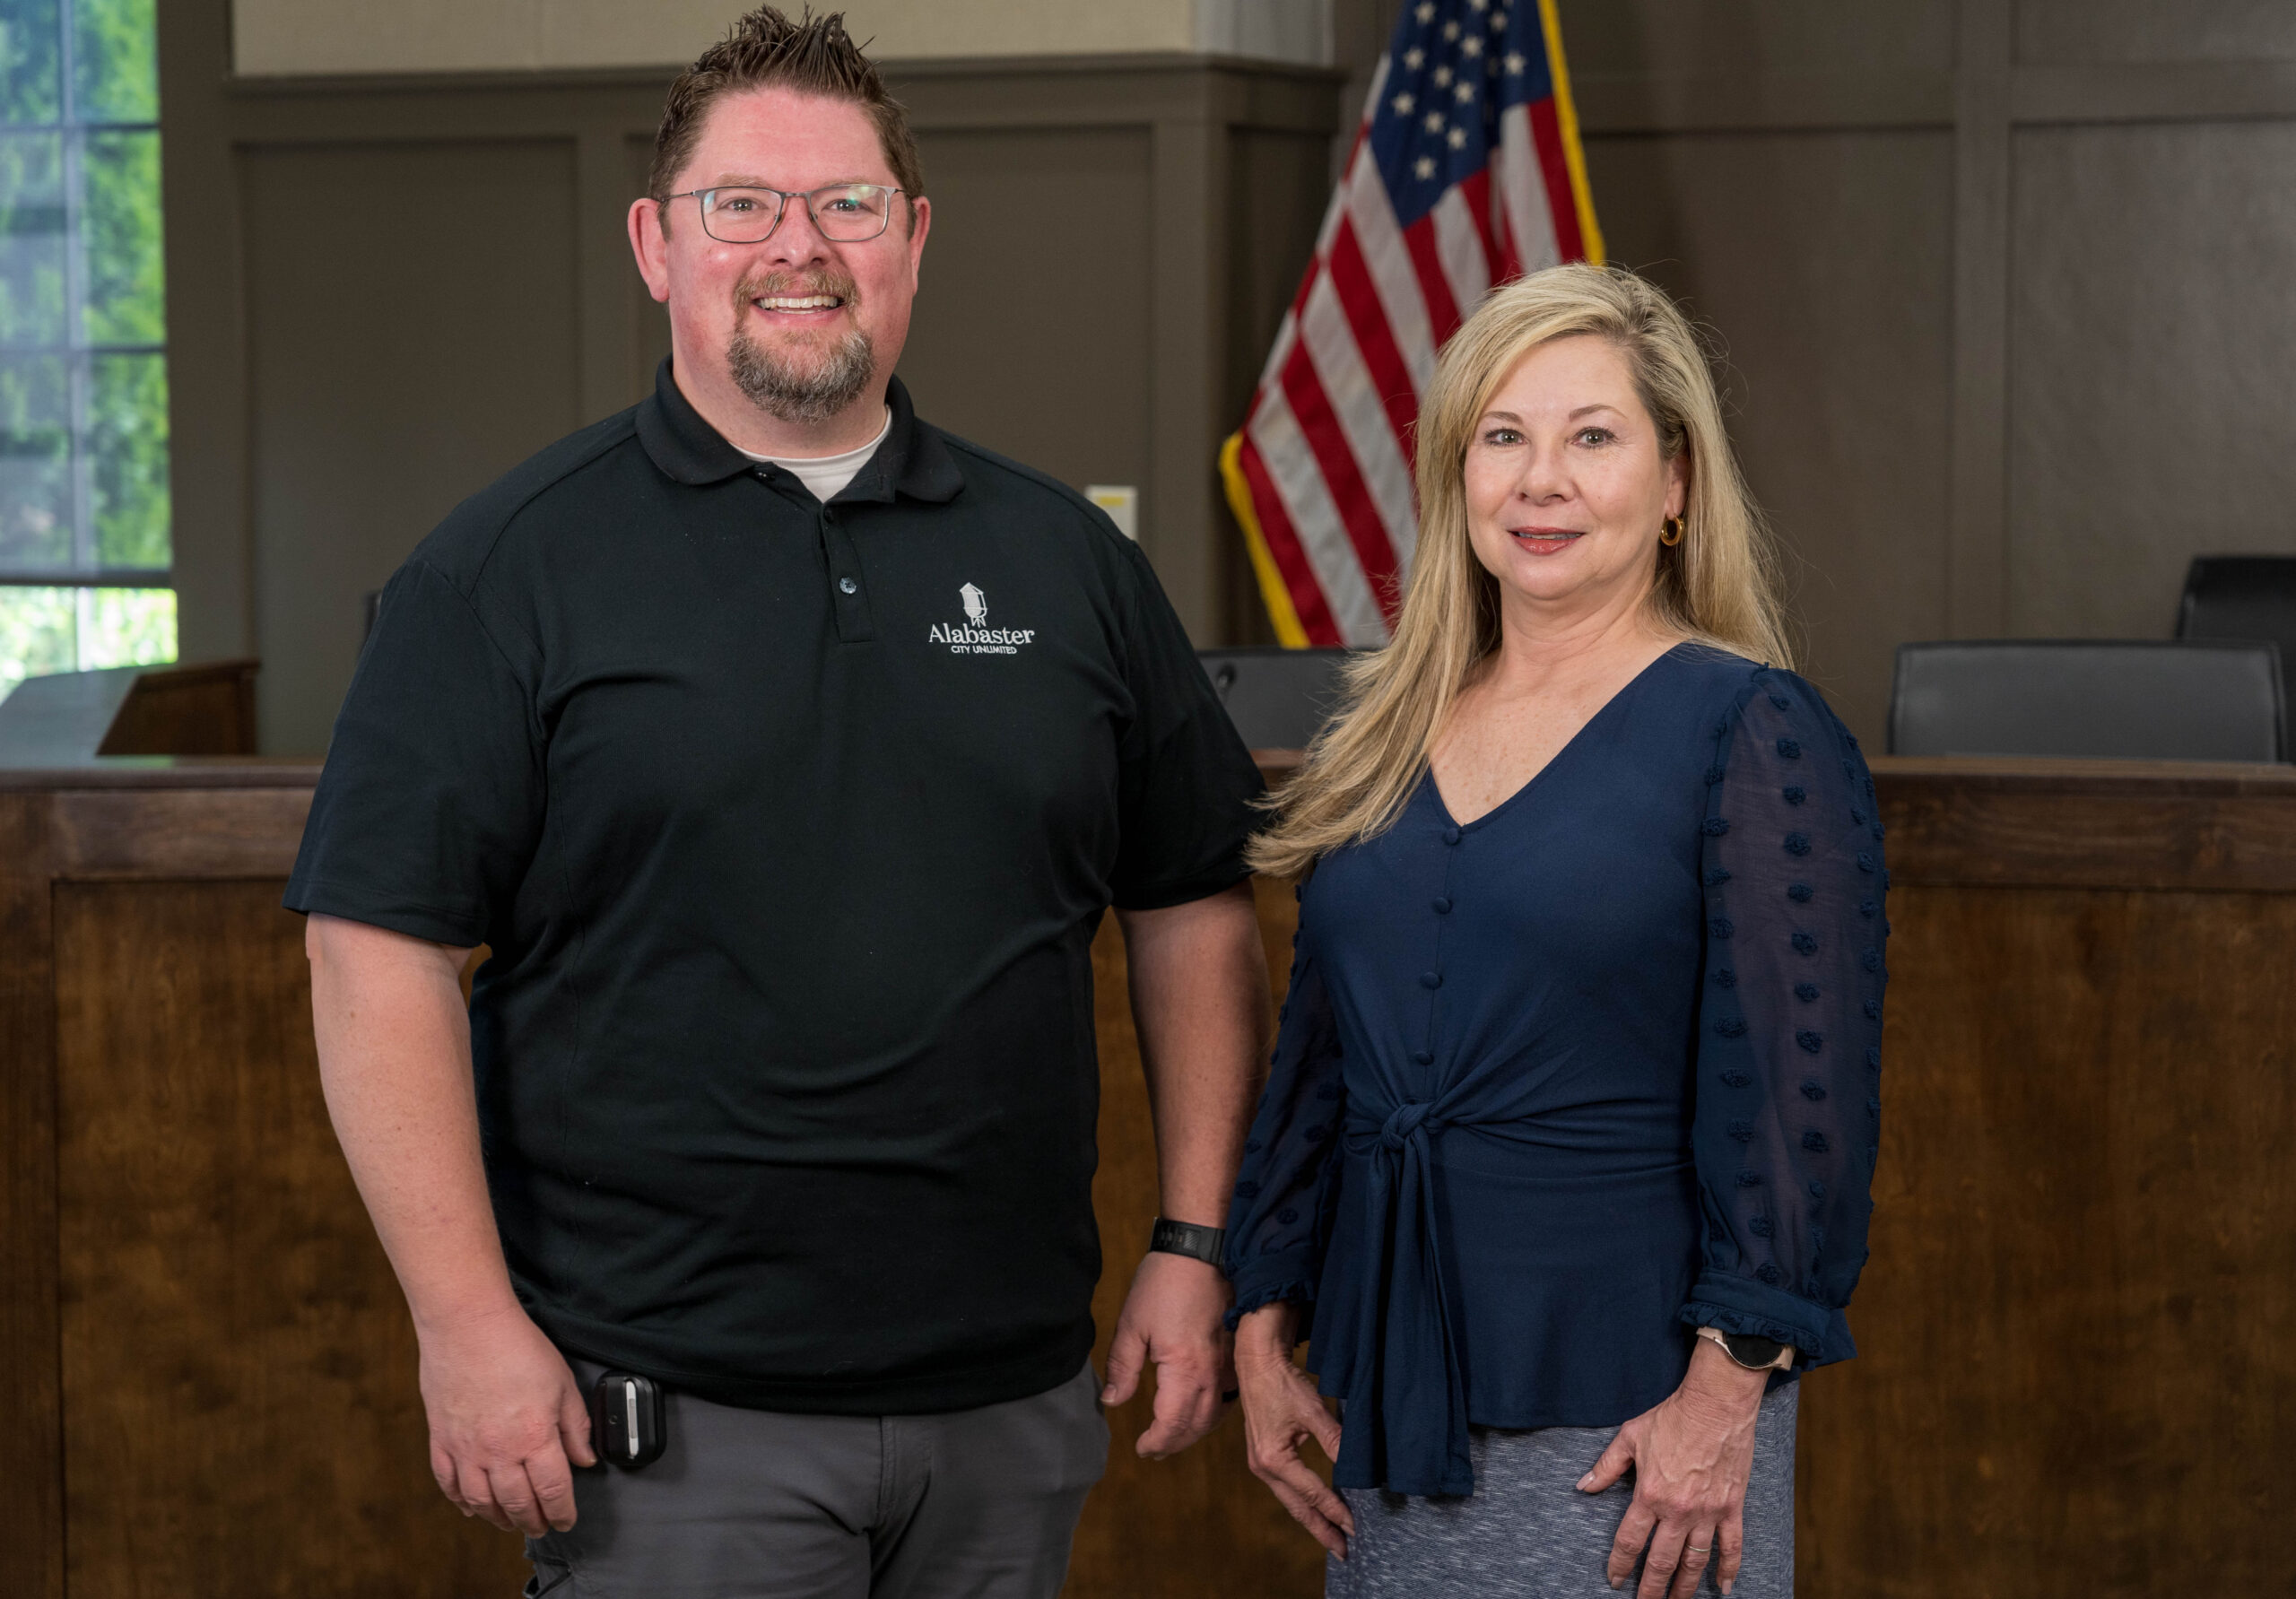 Meet City Clerk J. Mark Frey and Deputy City Clerk Lisa Glasgow